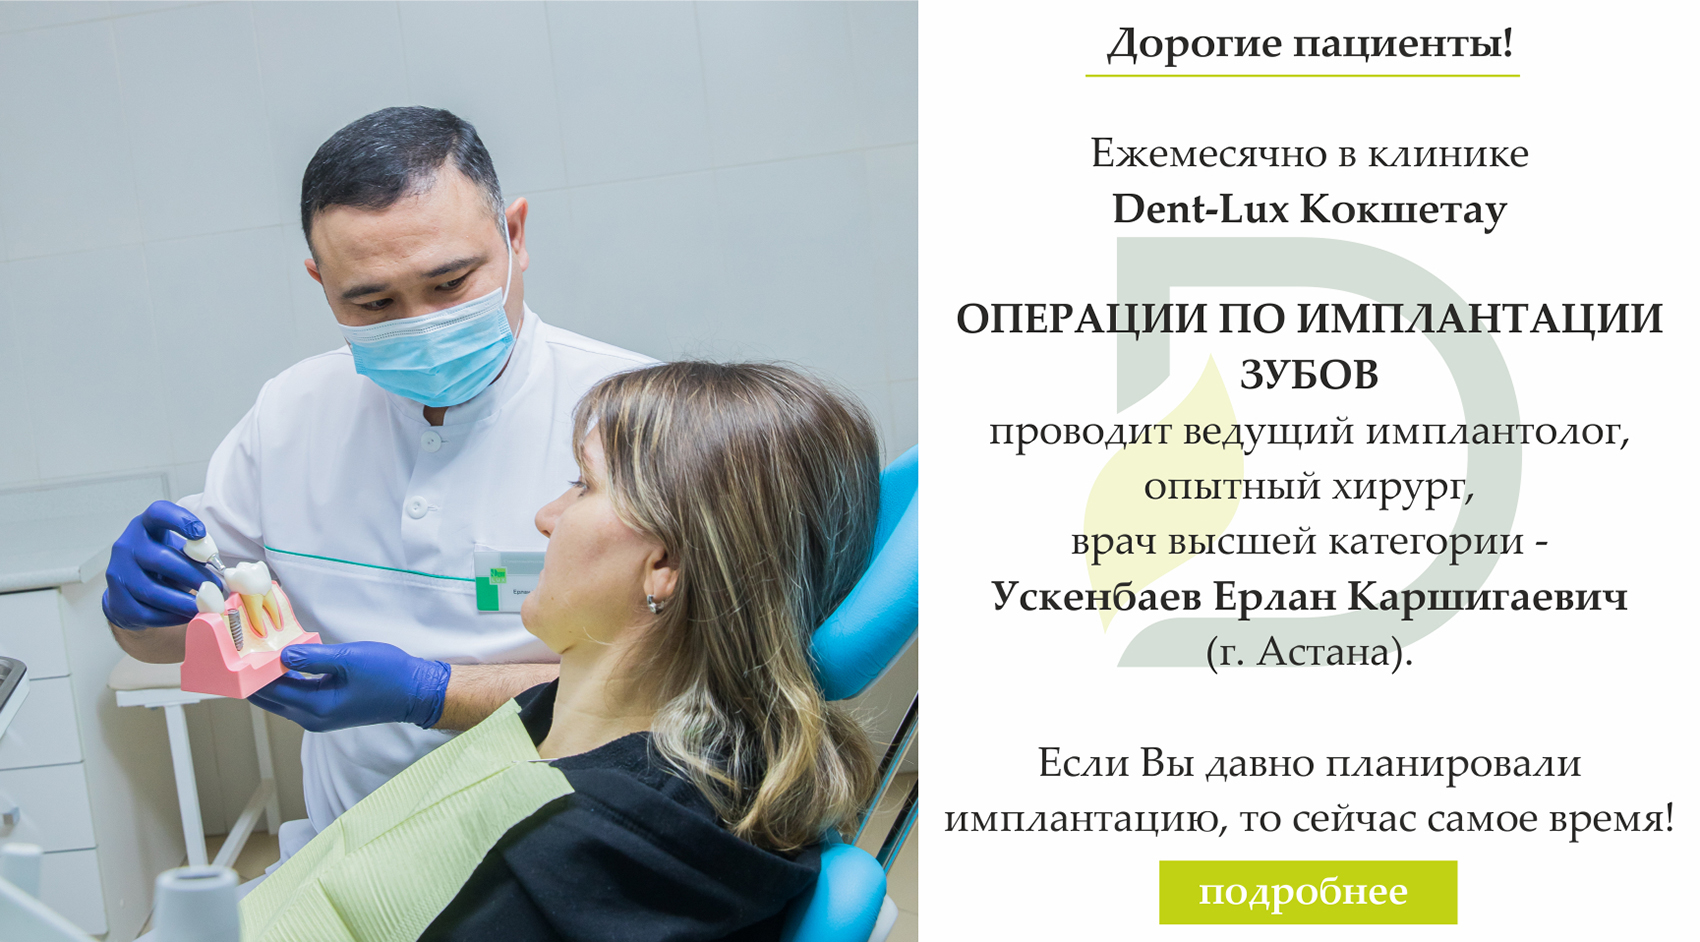 Программы укрепления зубов кальцием и фтором в Казахстане, фото 5